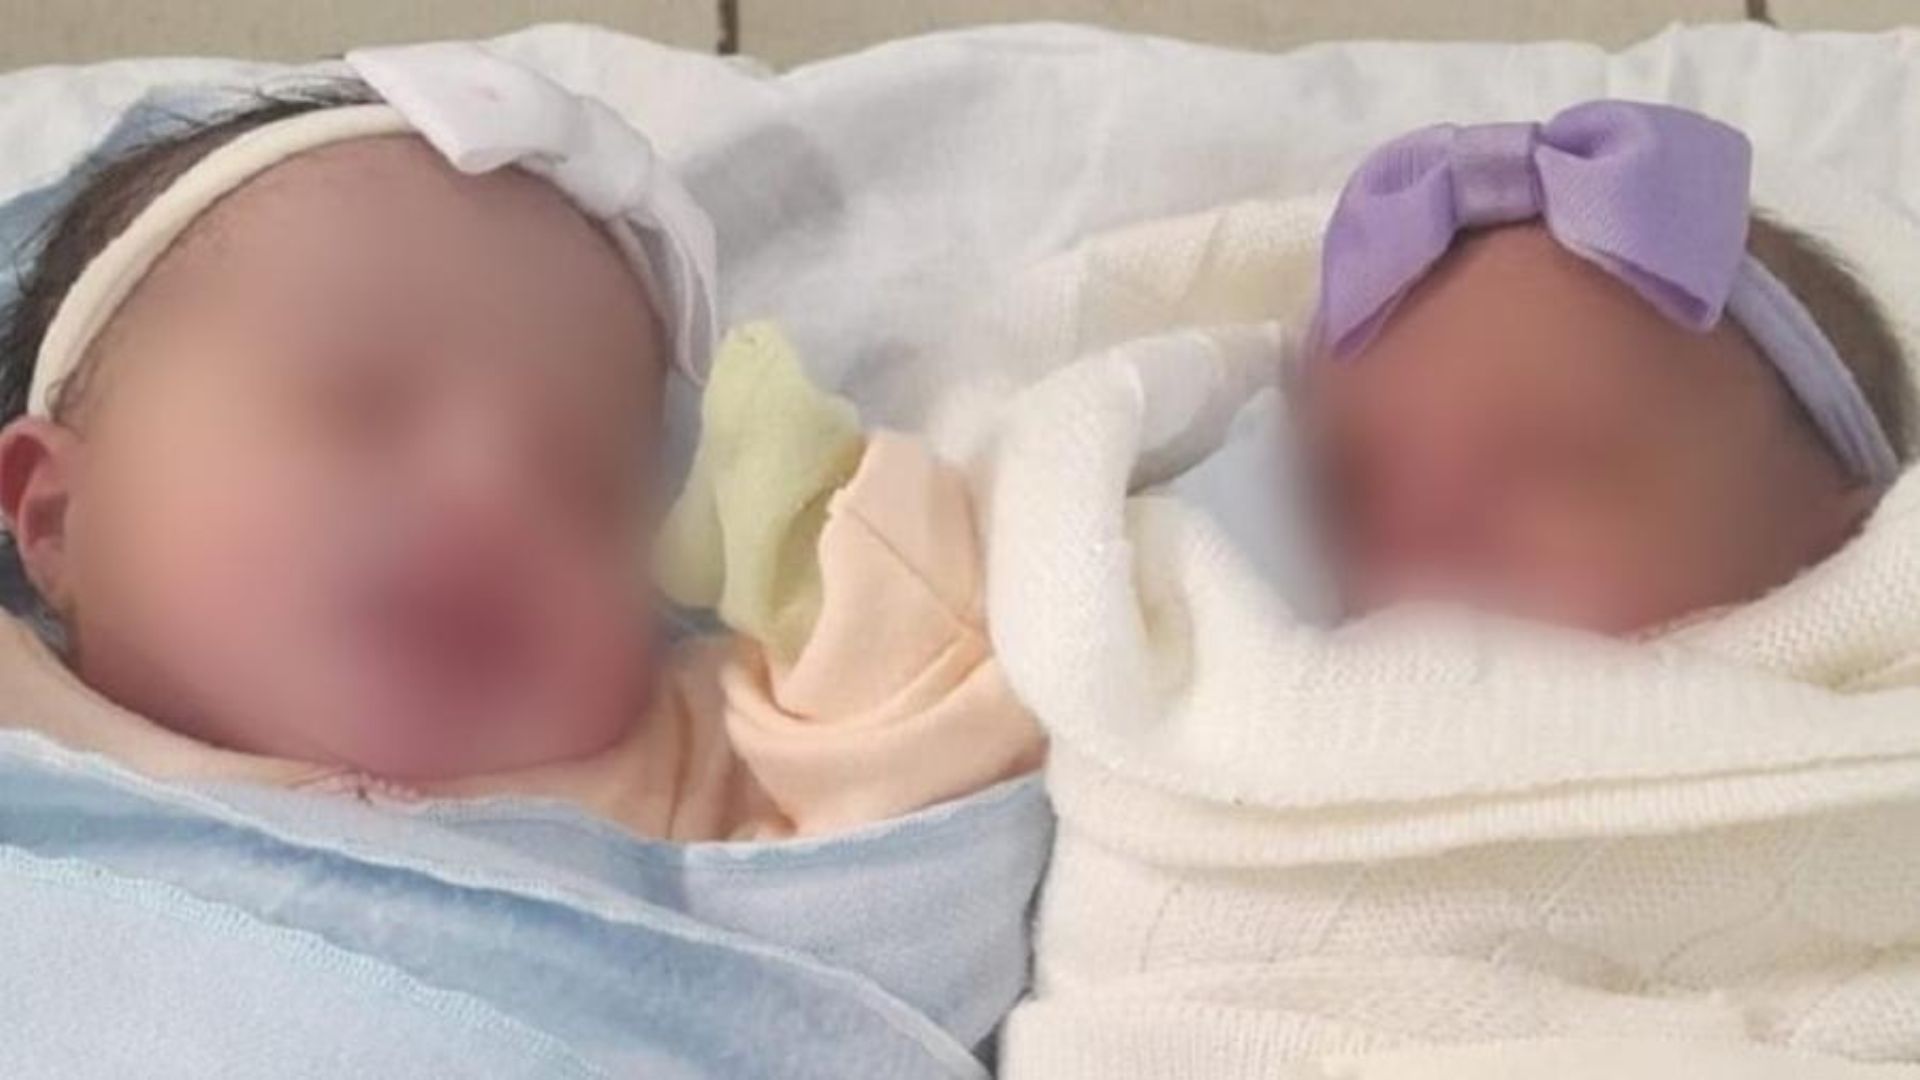 Mulher dá à luz gêmeas sem saber da gravidez, e uma delas cai na privada